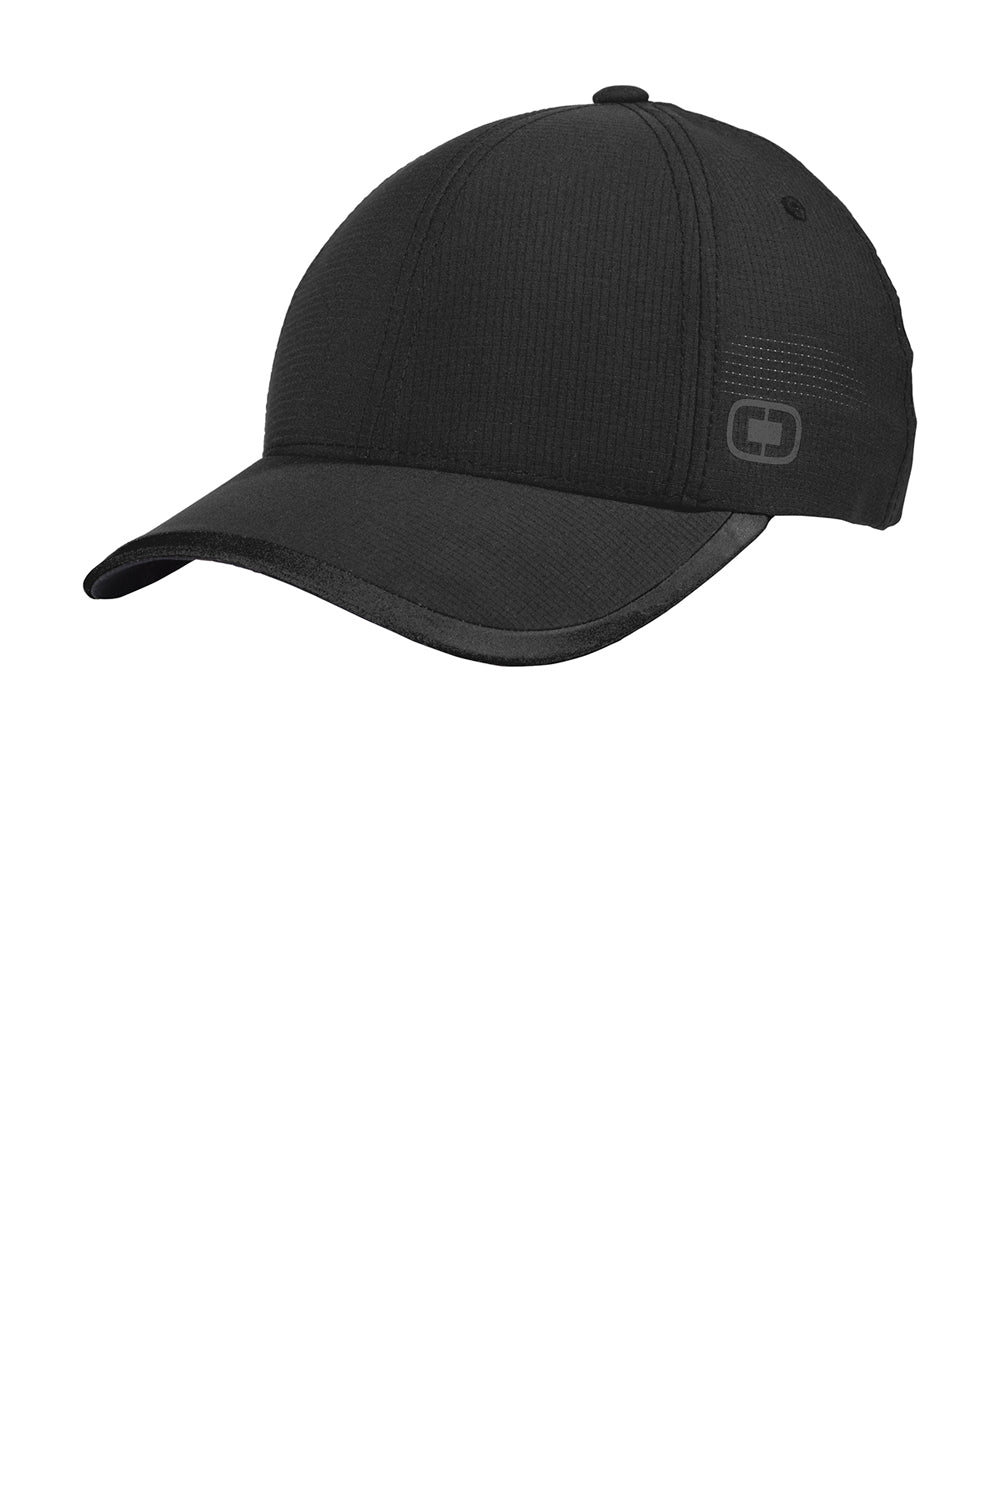 Ogio OG601 Mens Adjustable Hat Black Front